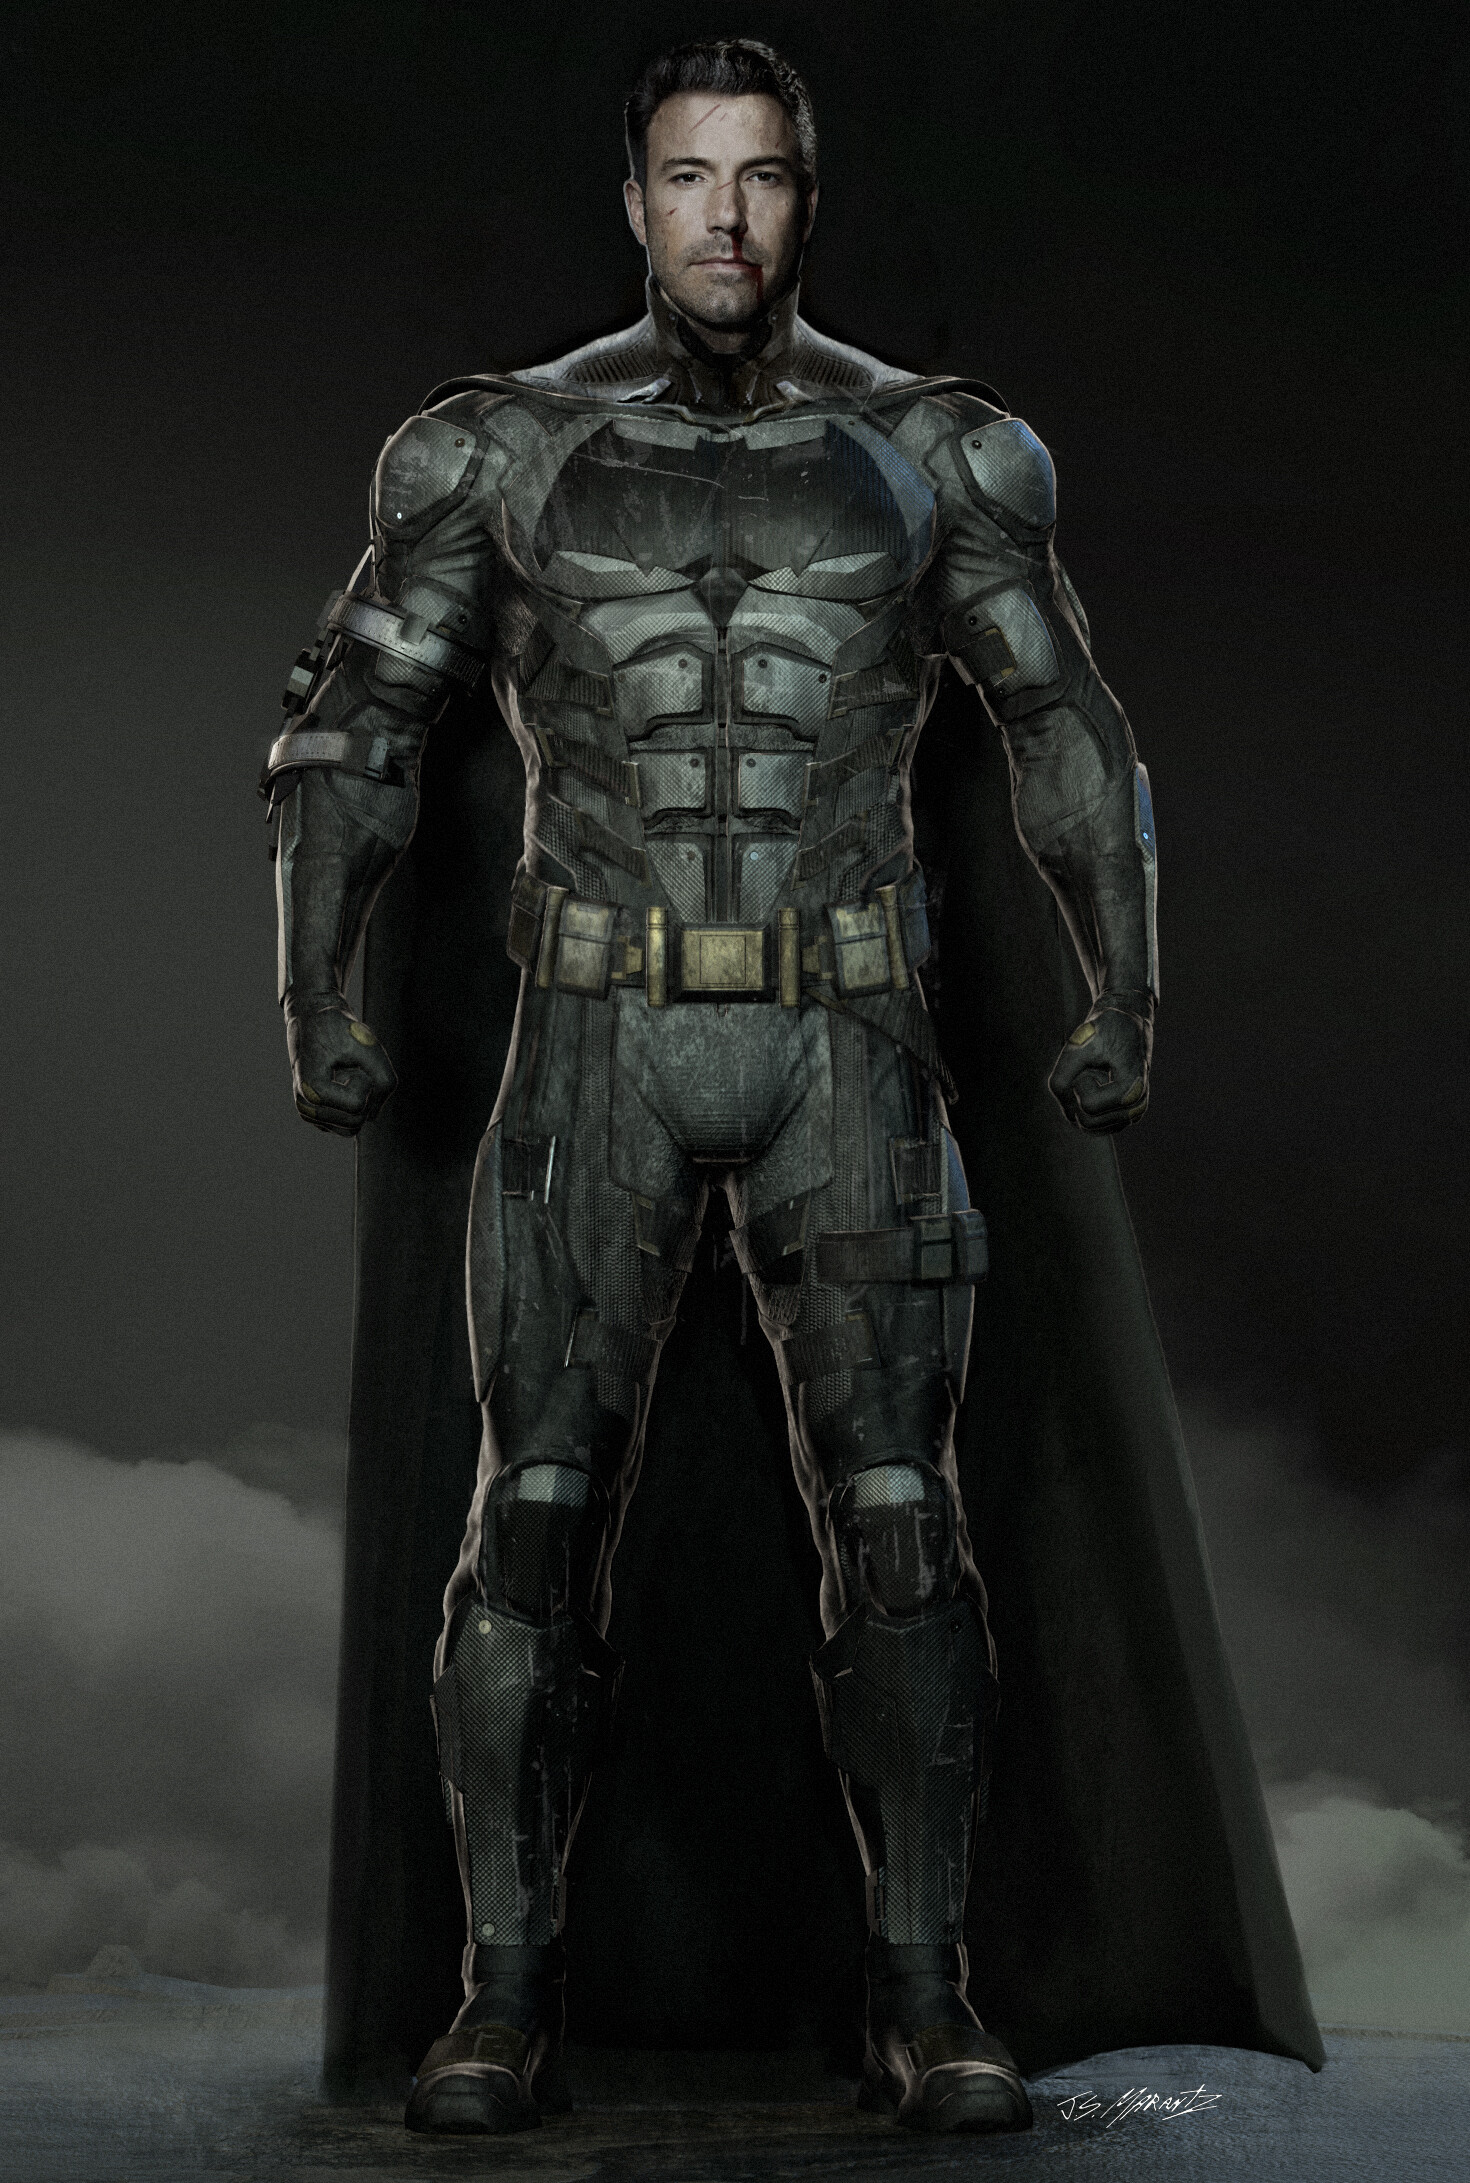 ArtStation - Justice League: Batman Tactical Suit